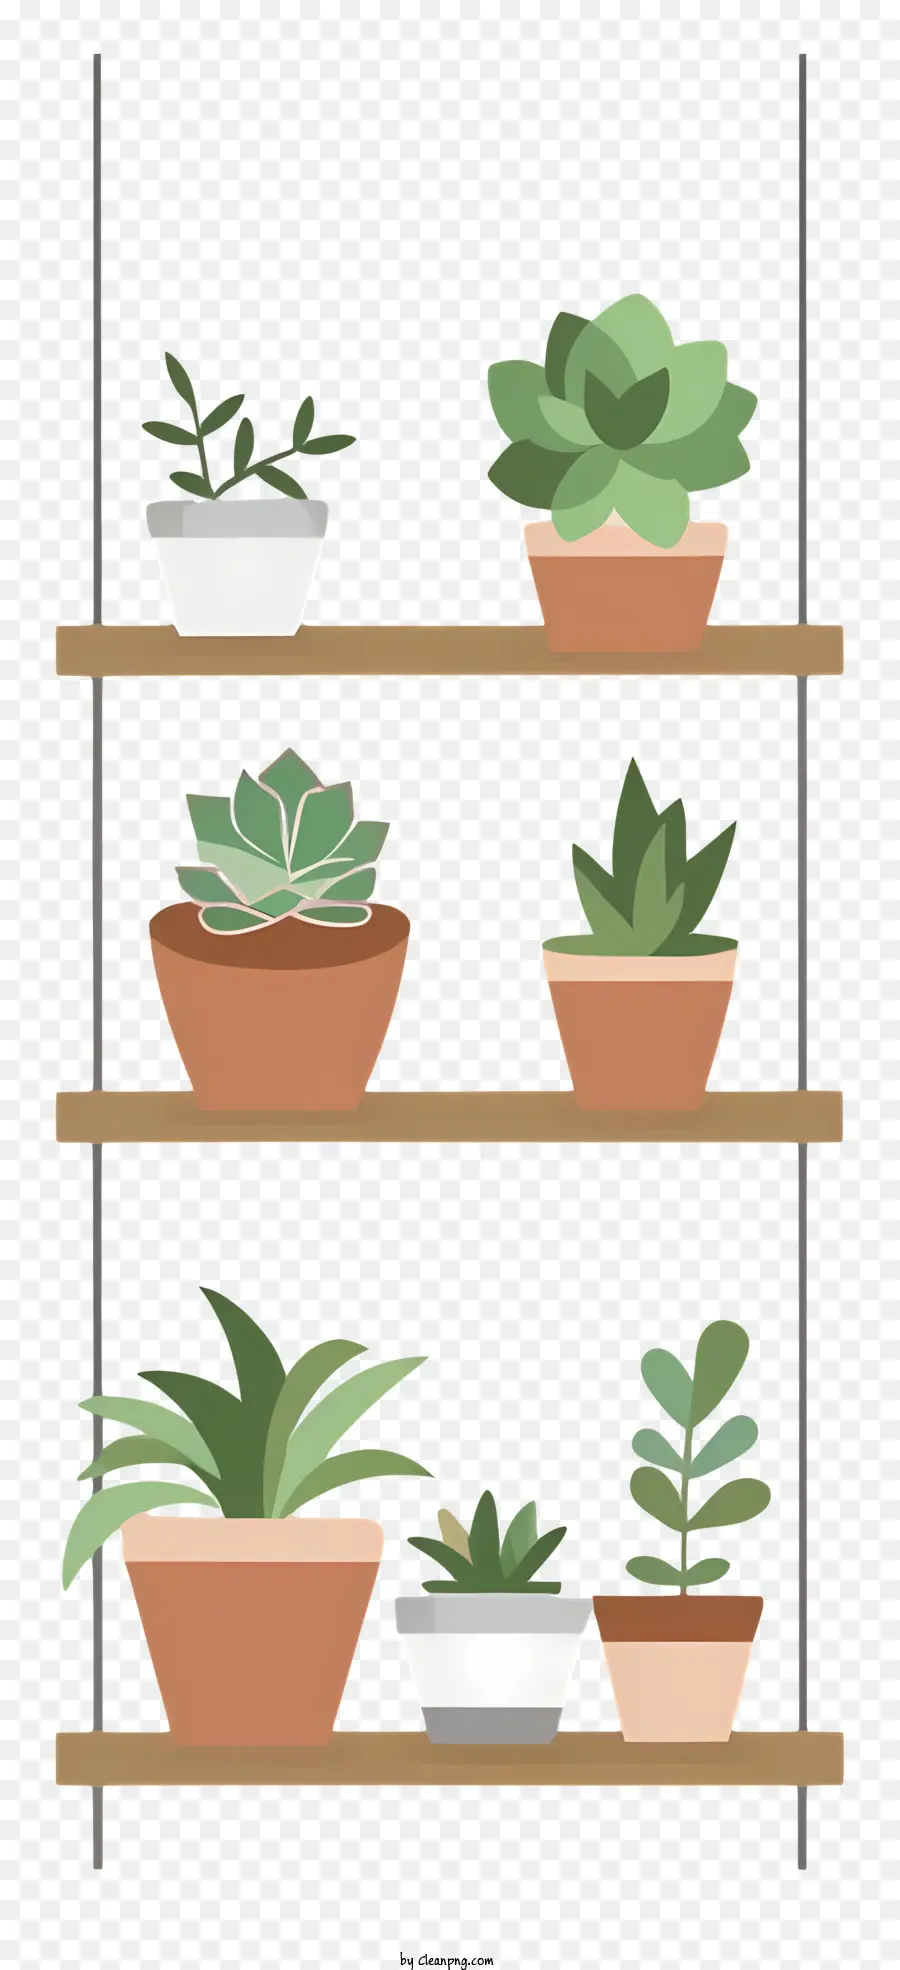 sfondo bianco - Diverse piante in vaso su scaffale in legno con aste